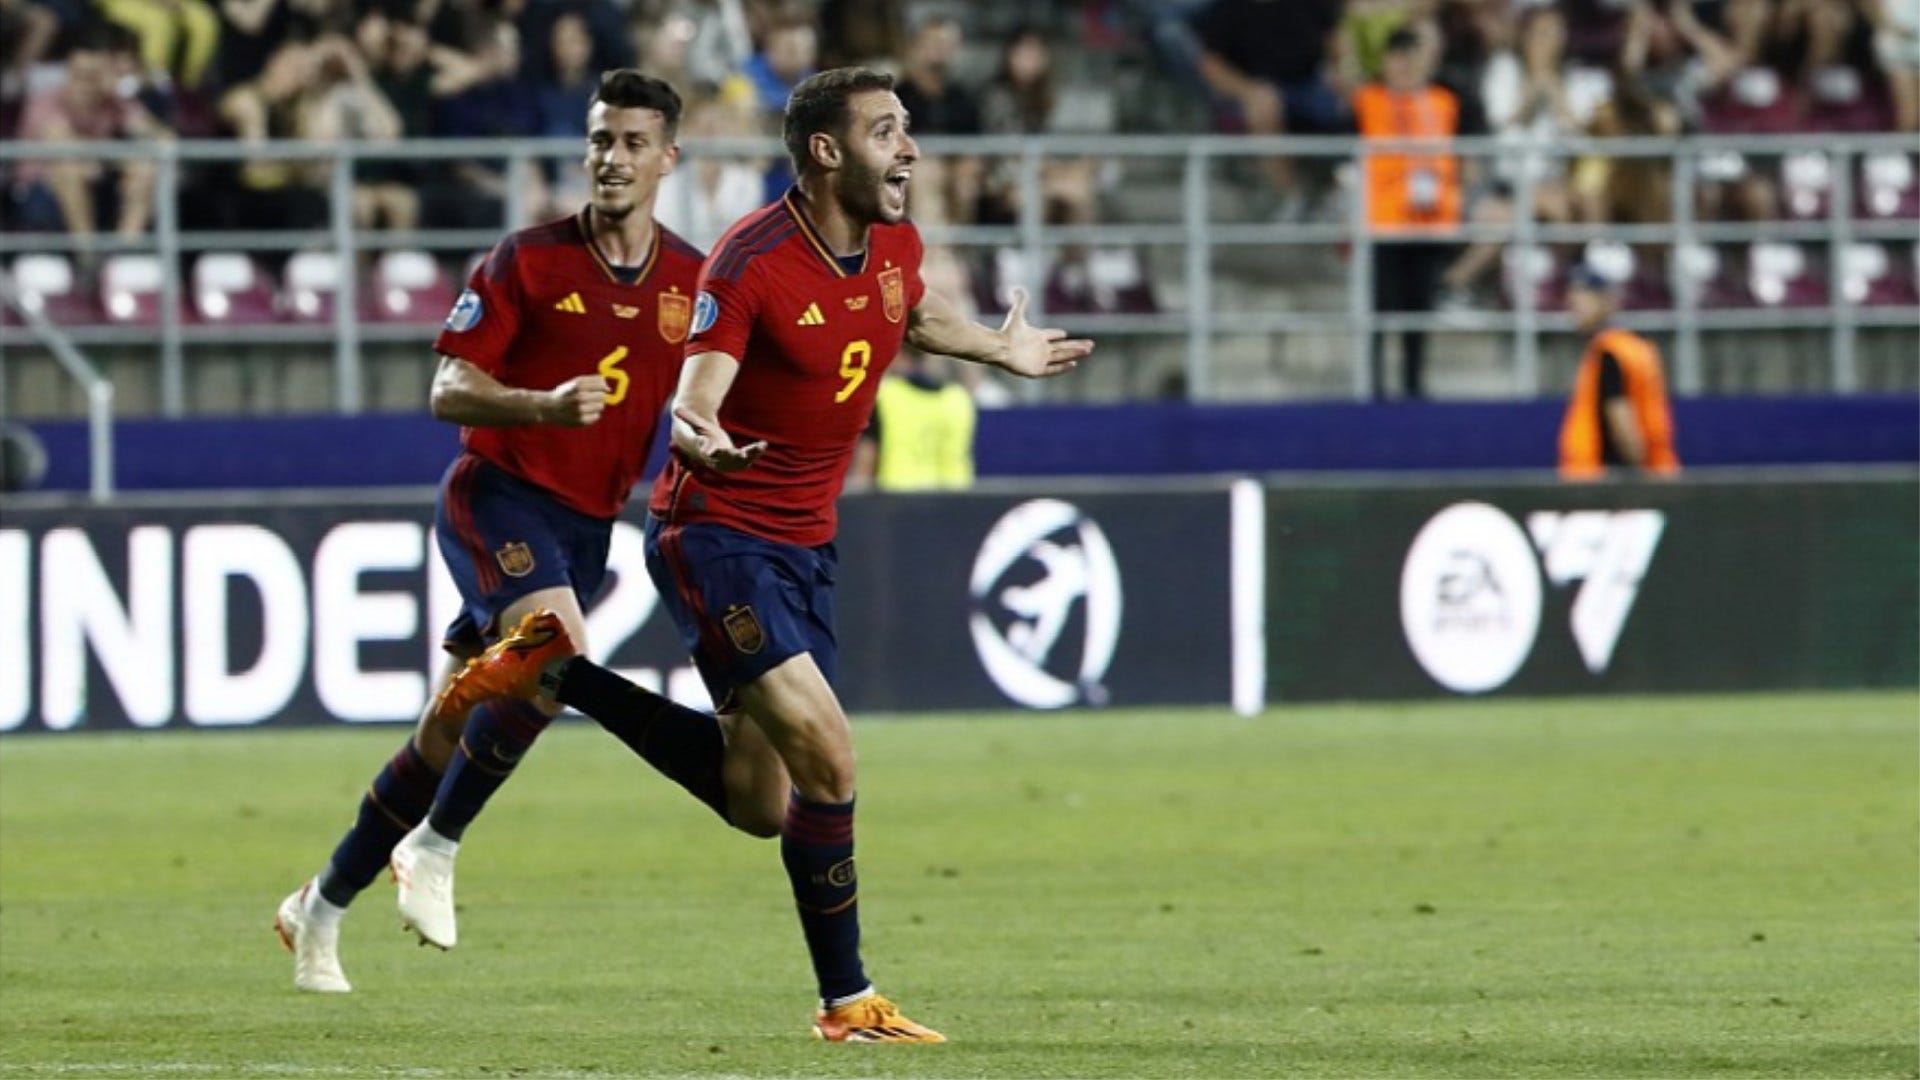 Espagne Sub-21 vs Suisse Sub-21: diffusion en direct, chaîne de télévision, heure de début et où regarder